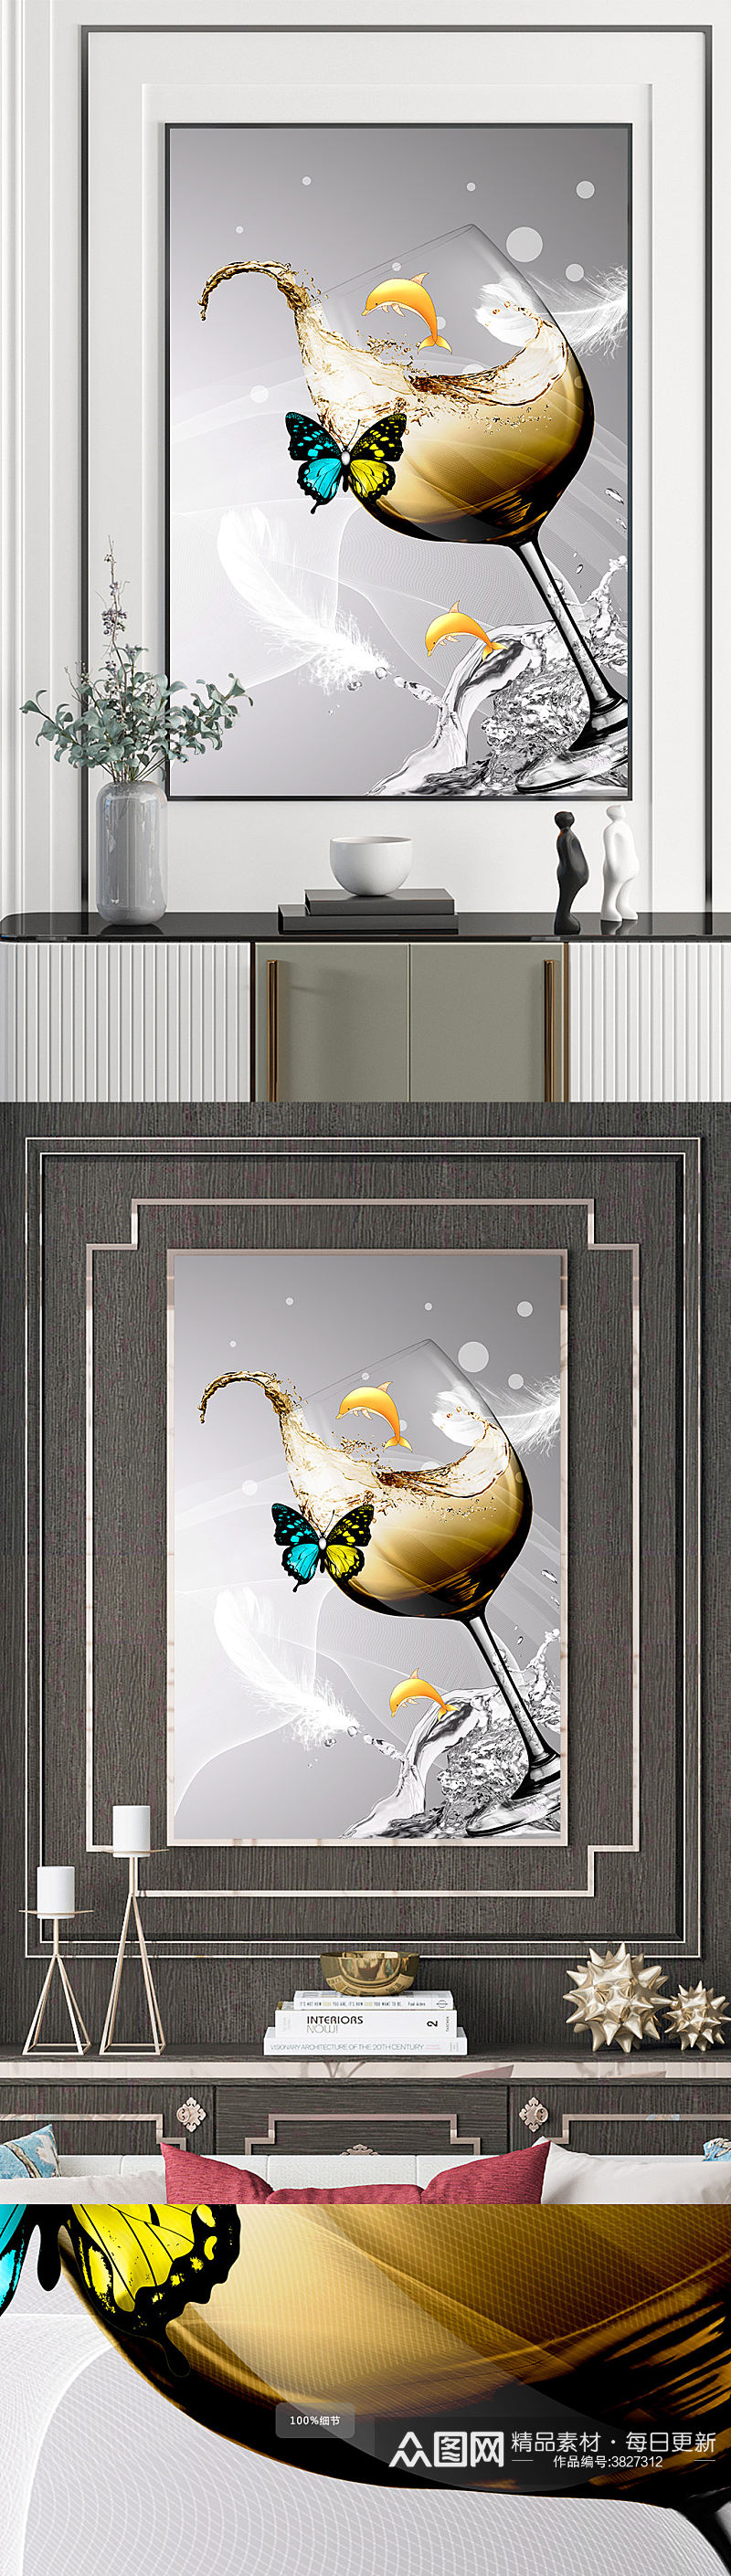 鎏金海豚餐厅高脚杯酒店装饰画素材